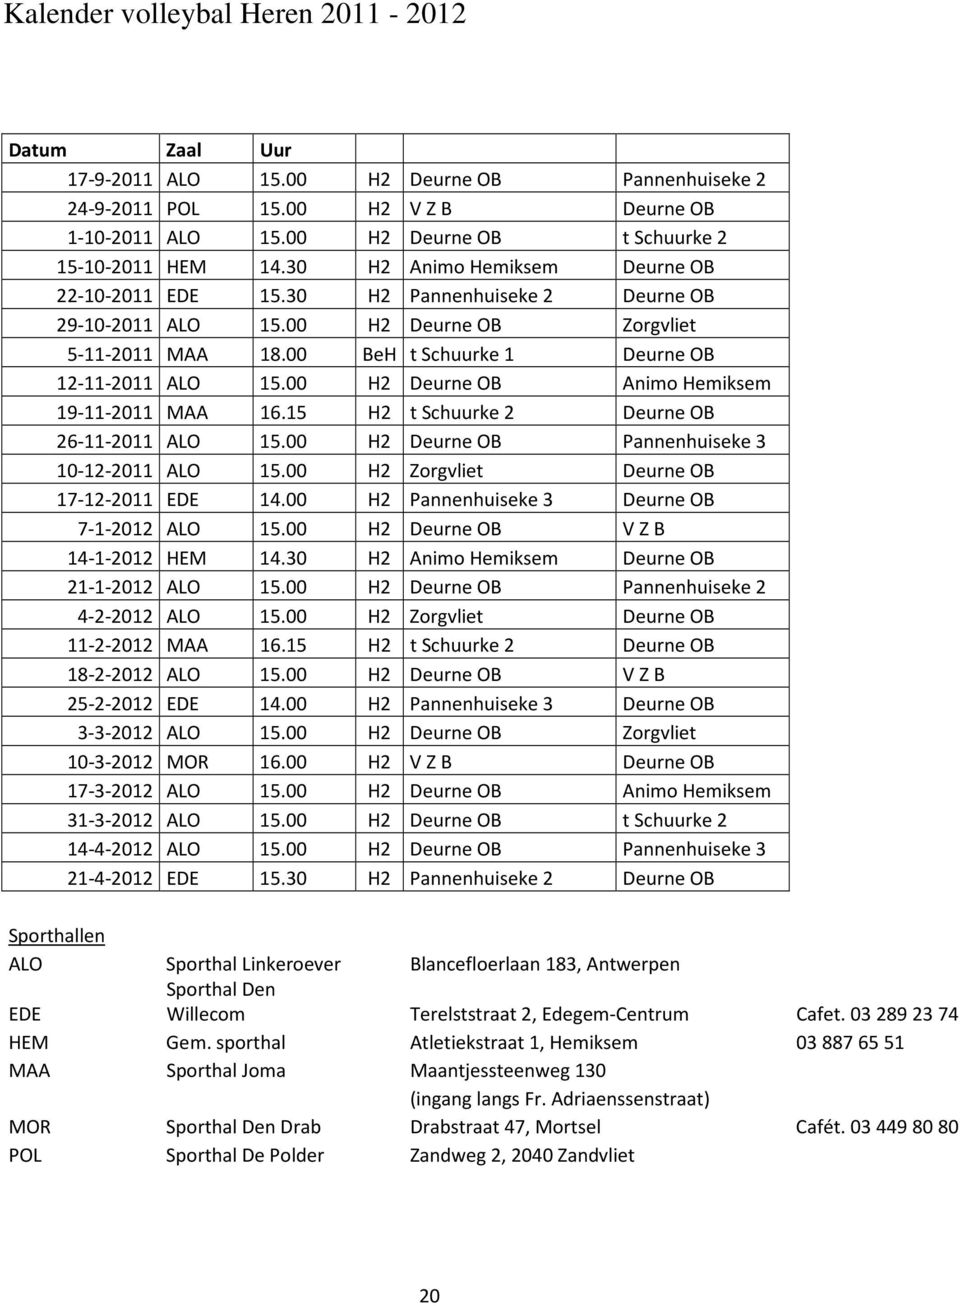 00 BeH t Schuurke 1 Deurne OB 12-11-2011 ALO 15.00 H2 Deurne OB Animo Hemiksem 19-11-2011 MAA 16.15 H2 t Schuurke 2 Deurne OB 26-11-2011 ALO 15.00 H2 Deurne OB Pannenhuiseke 3 10-12-2011 ALO 15.